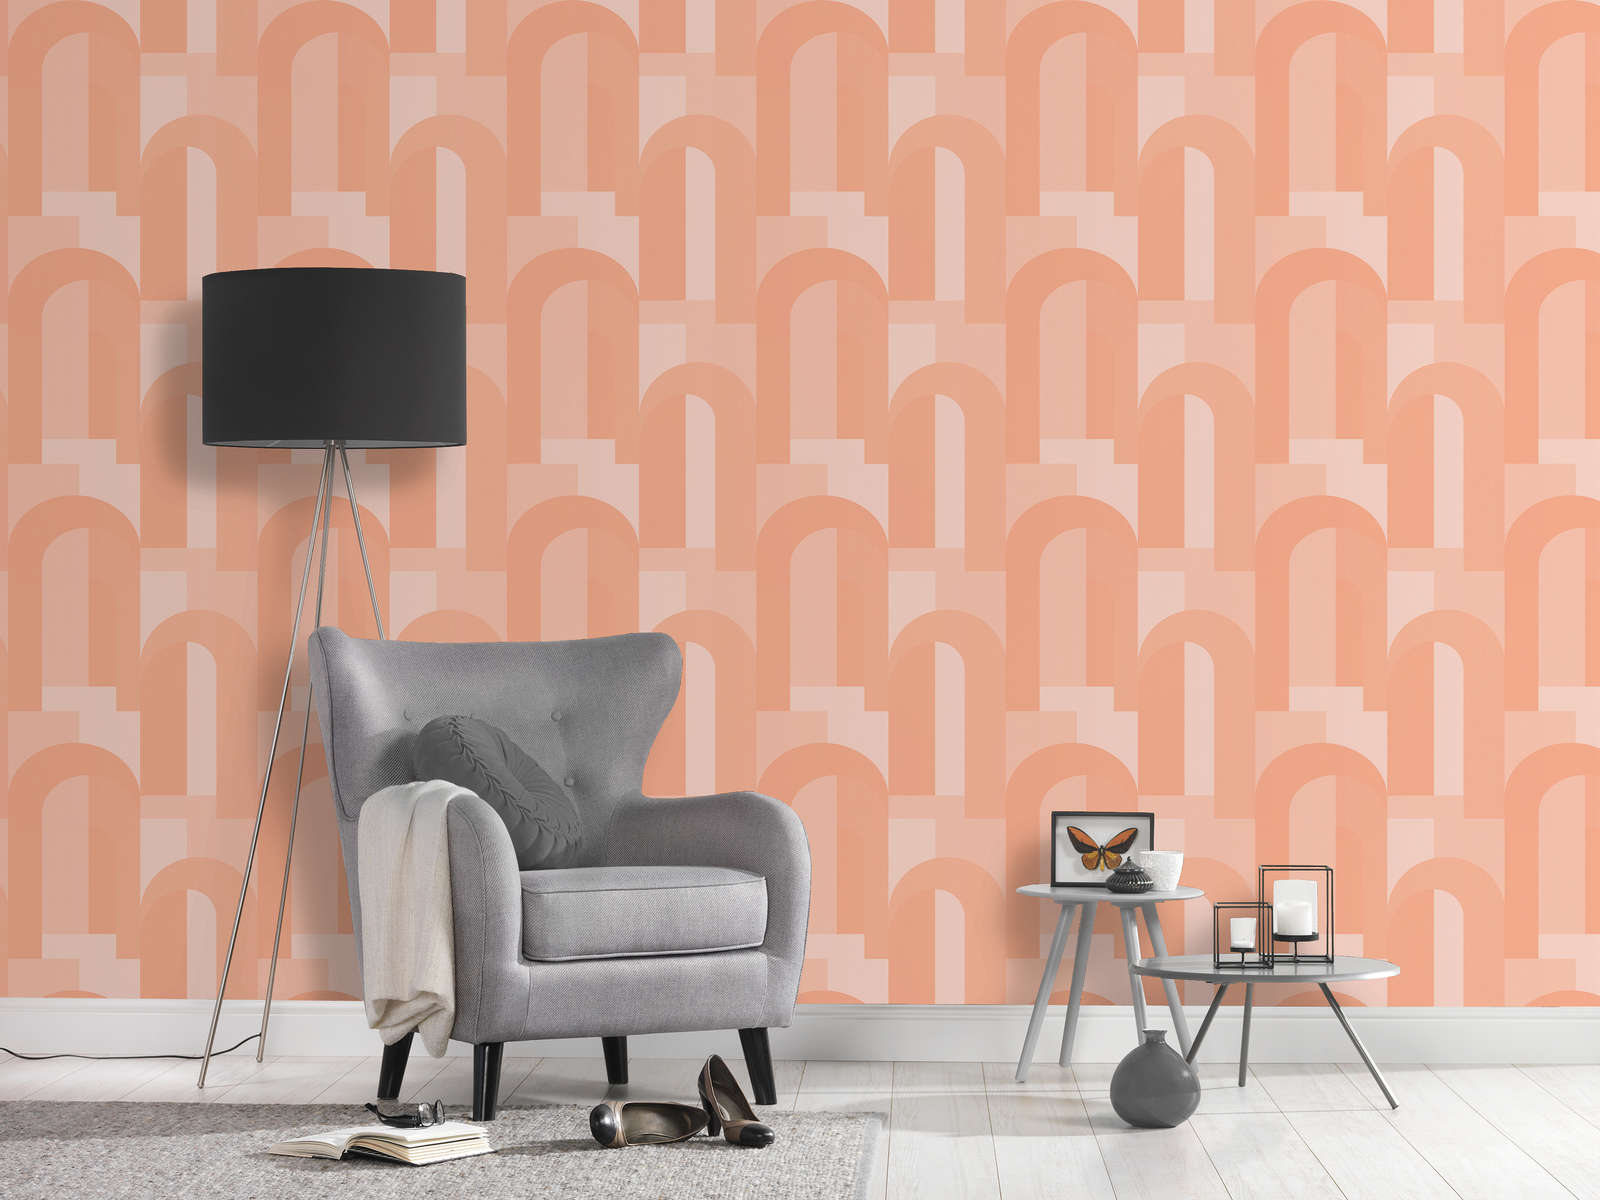             Graphic wallpaper with arch - Orange, Beige
        